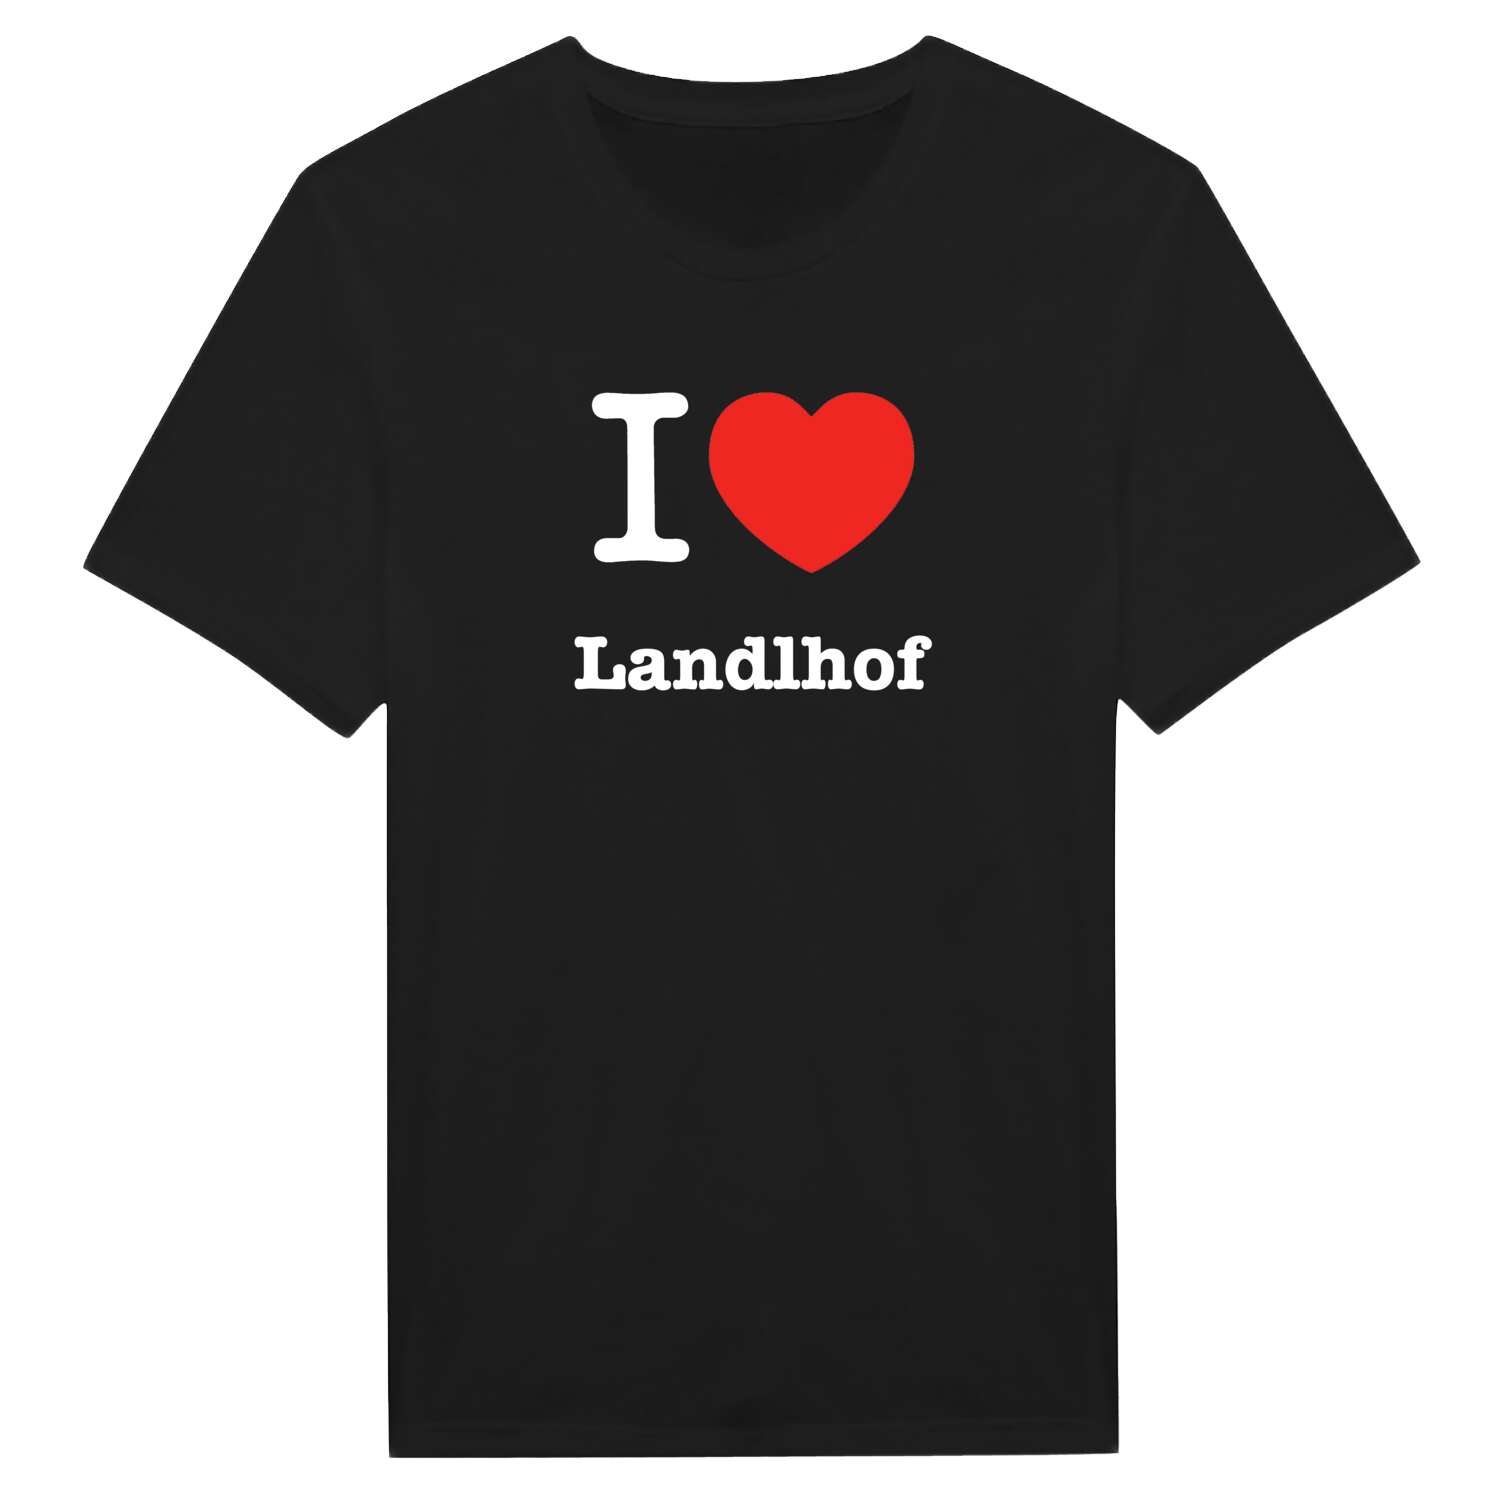 Landlhof T-Shirt »I love«